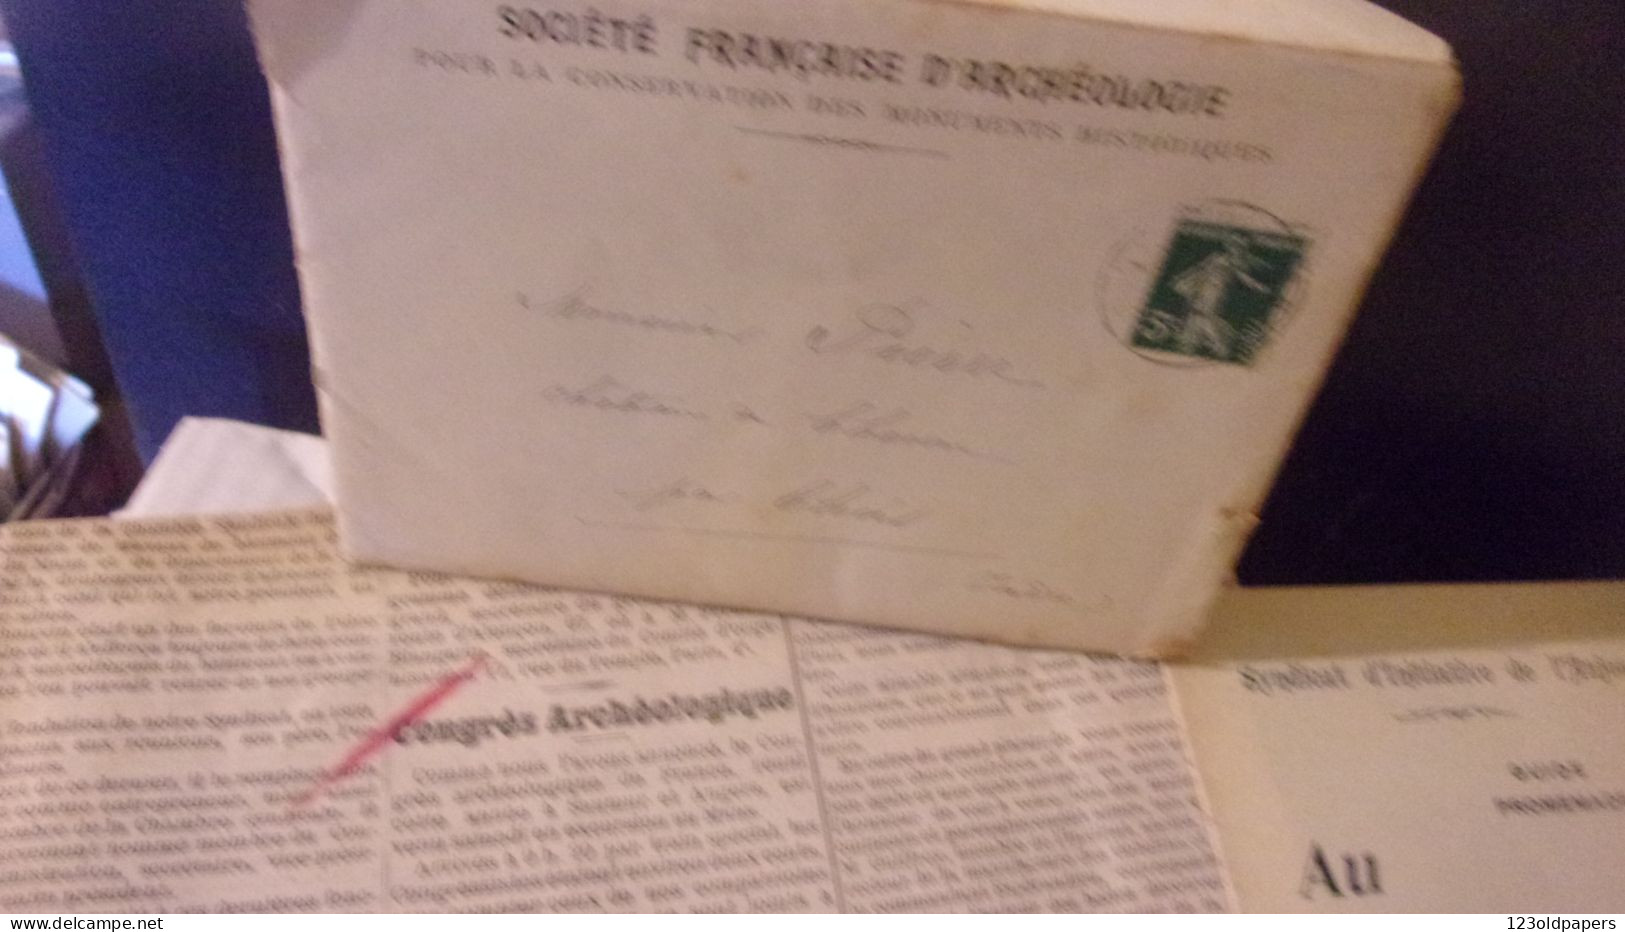 ANJOU ANGERS - MAINE ET LOIRE 1910 BEL ENSEMBLE LETTRES PUB INVITATIONS CDV DU CONGRES ARCHEOLOGIQUE DE FRANCE